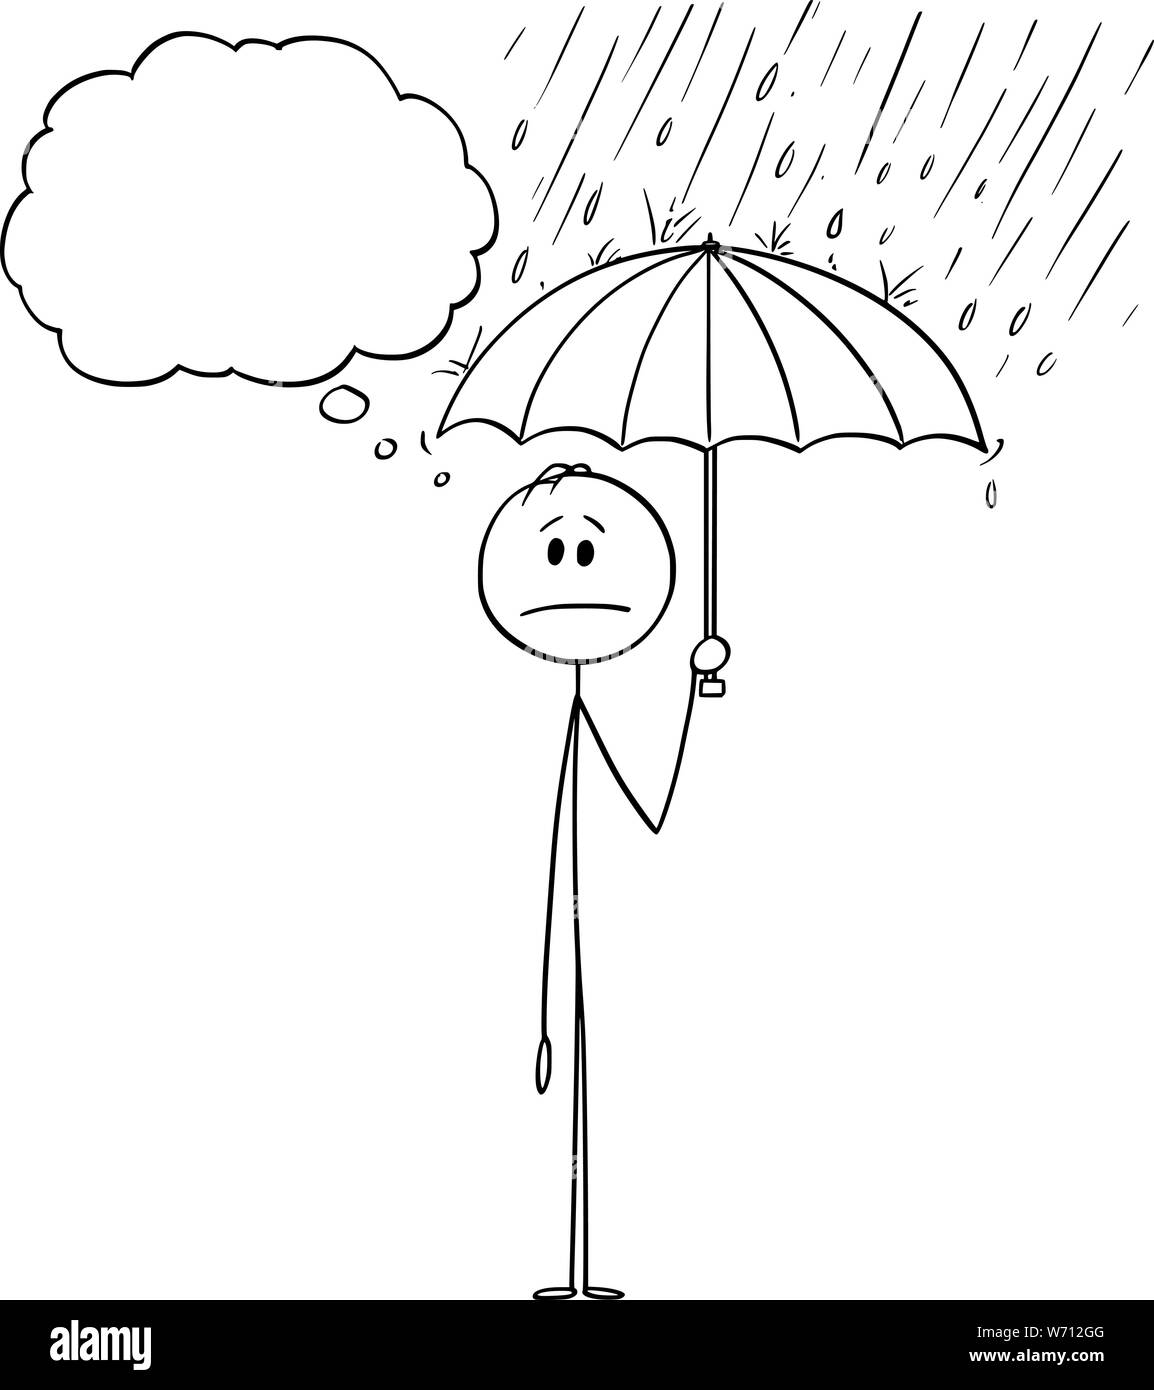 Vector cartoon stick figure dessin illustration conceptuelle de l'homme ou homme debout dans la pluie ou tempête et holding umbrella. Il est en sécurité et cachés de la crise. Illustration de Vecteur